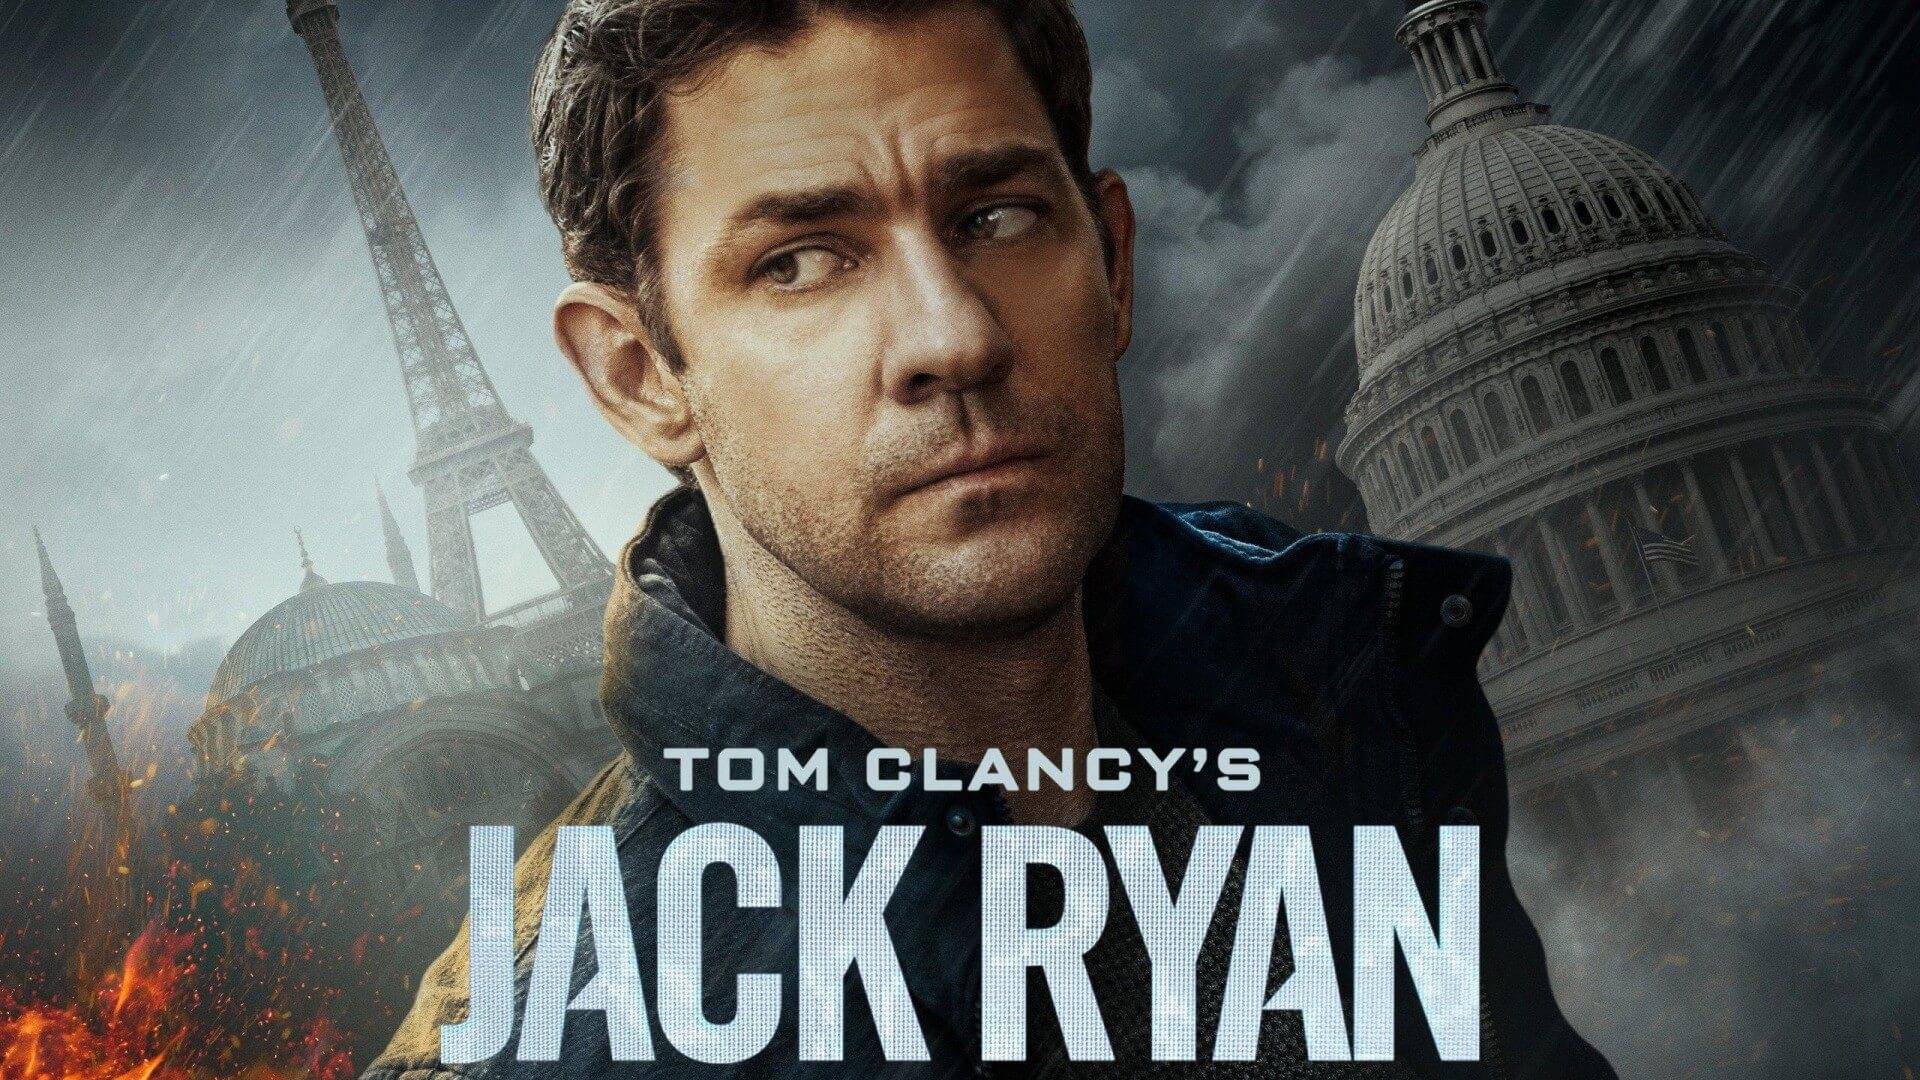 Tom Clancy's Jack Ryan / Tom Clancy's Jack Ryan (2018)